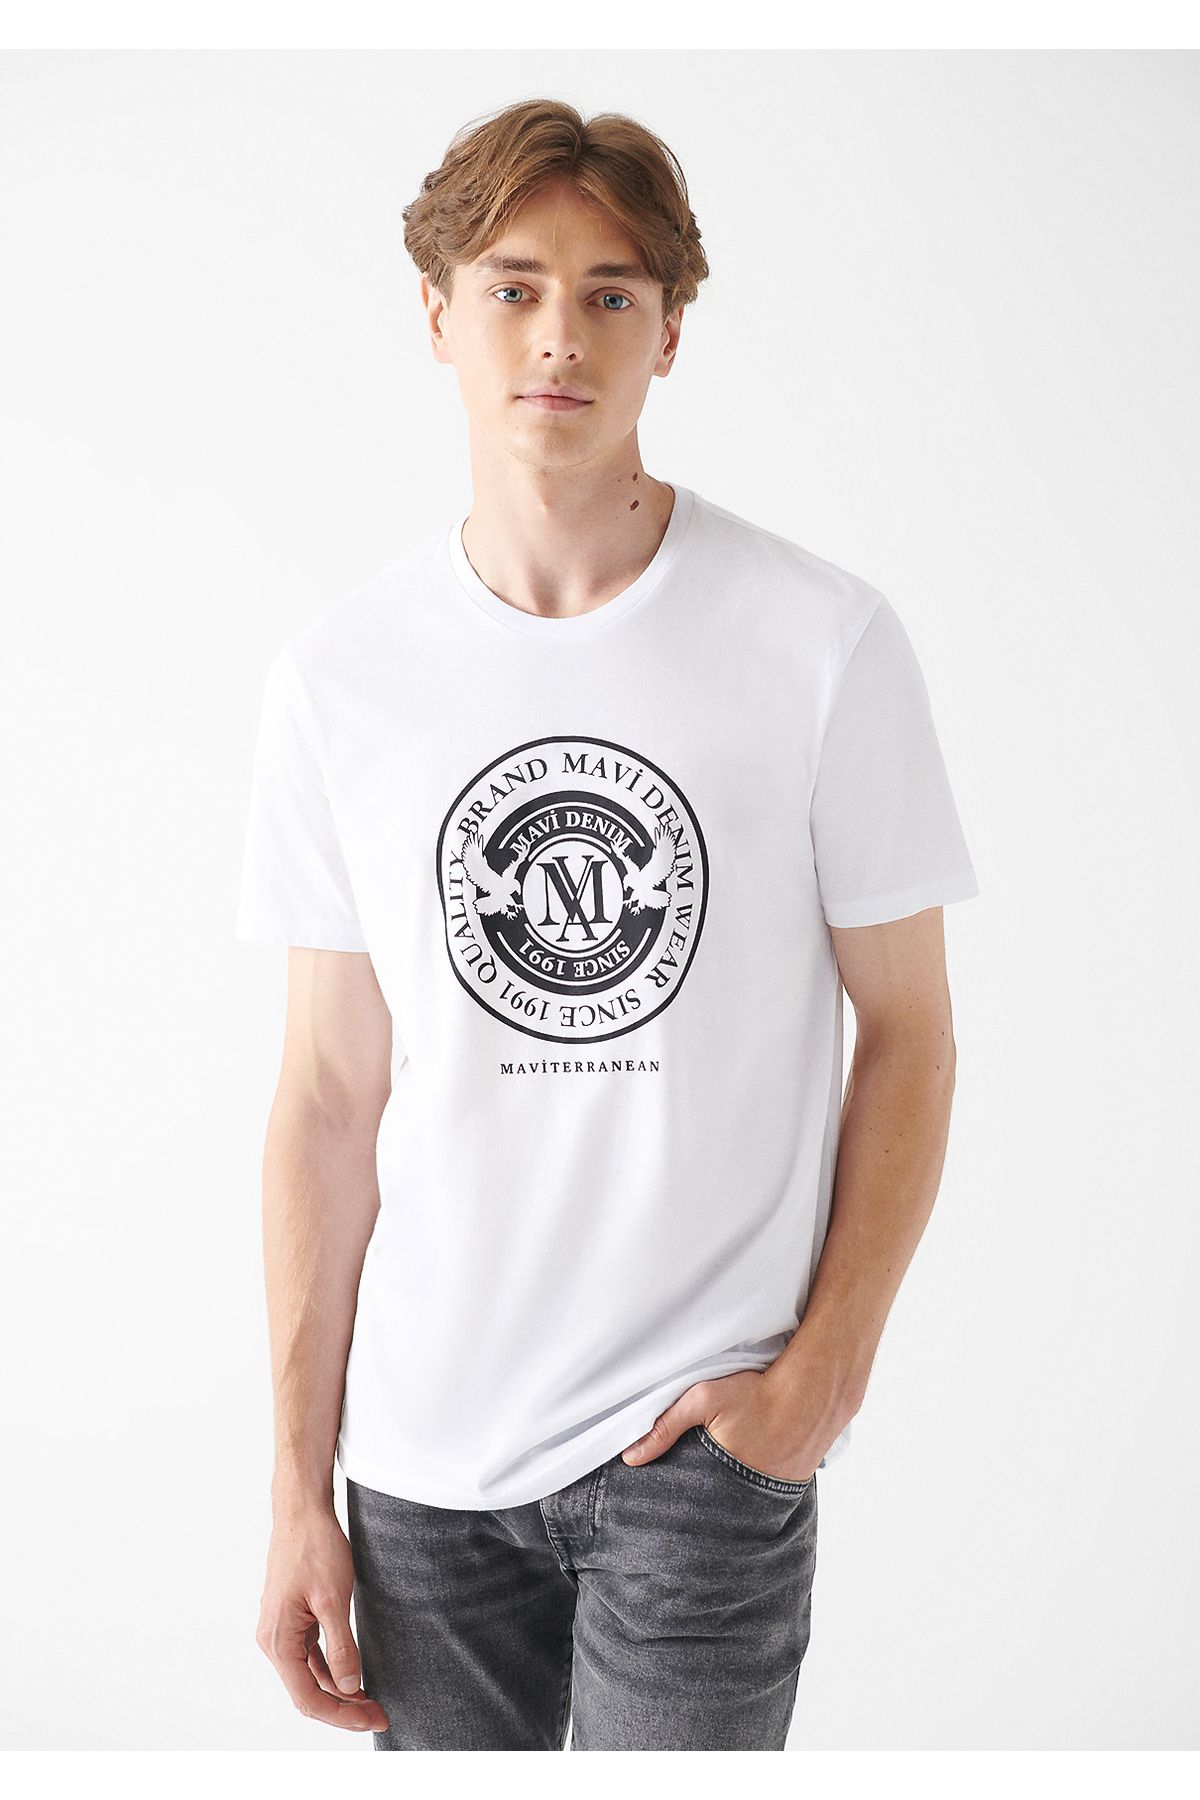 تی شرت چاپ شده با لوگو سفید مردانه از برند  ماوی Mavi (برند ترکیه)